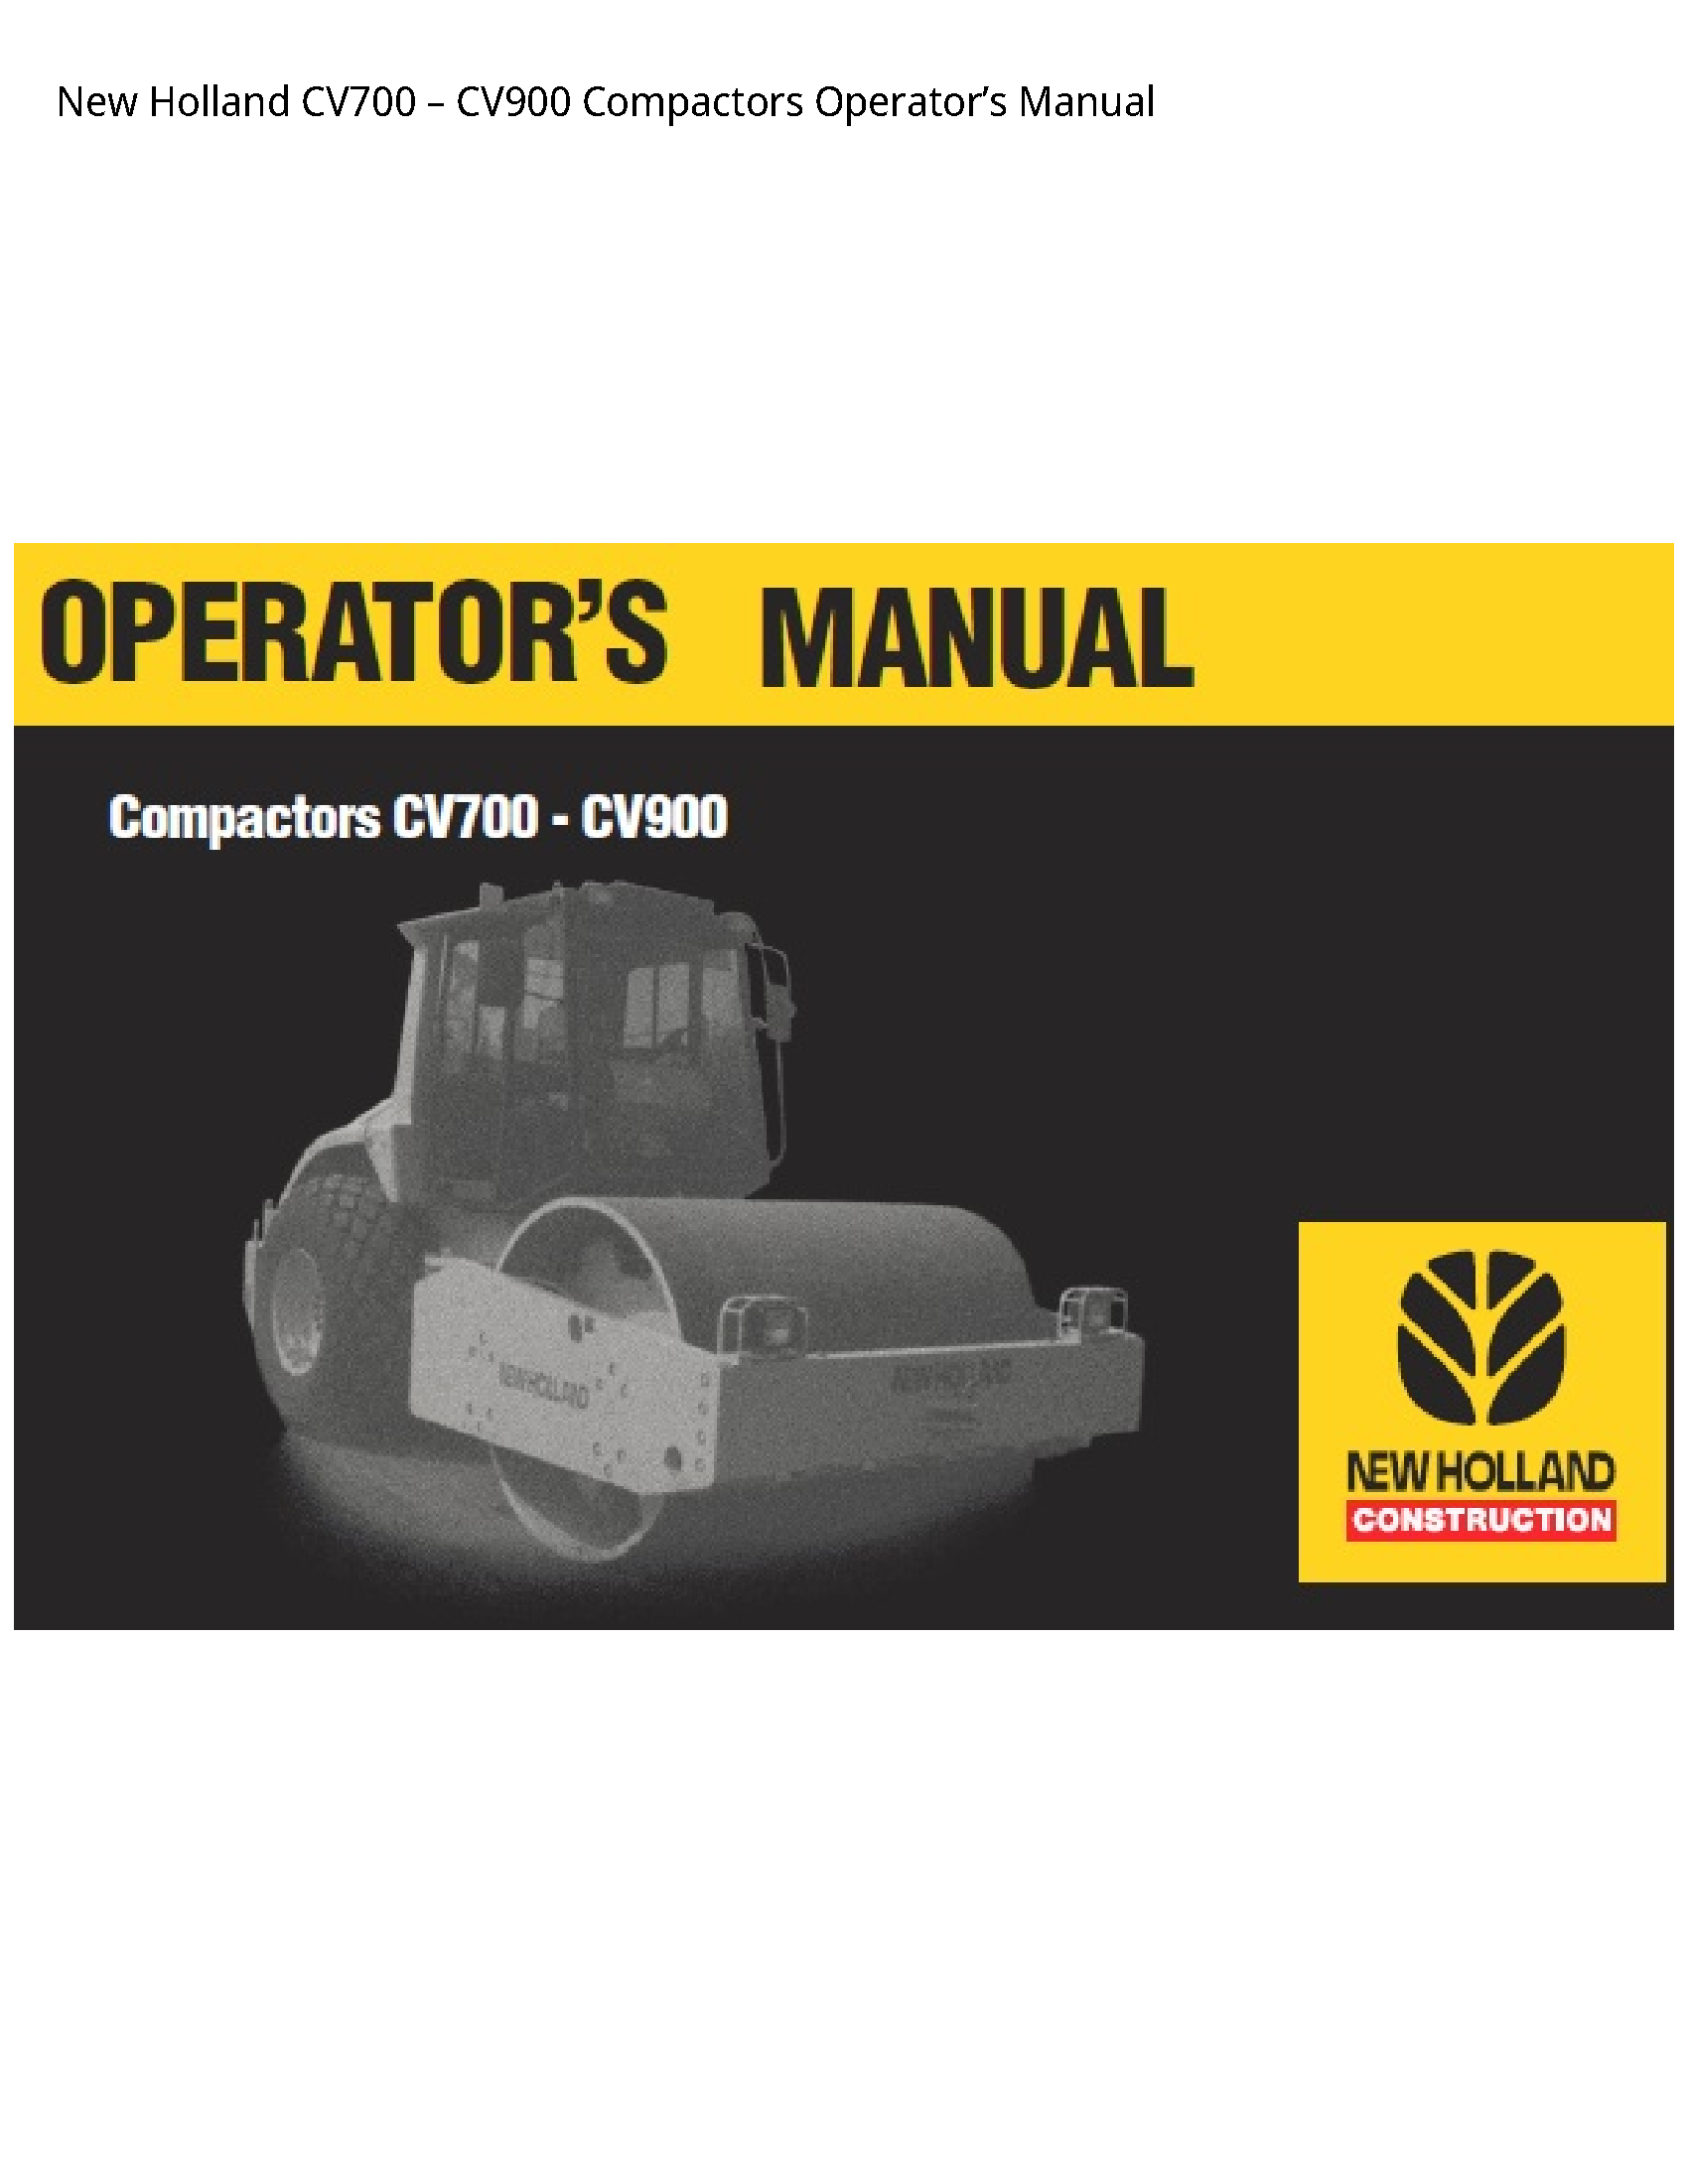 New Holland CV700 Compactors Operator’s manual